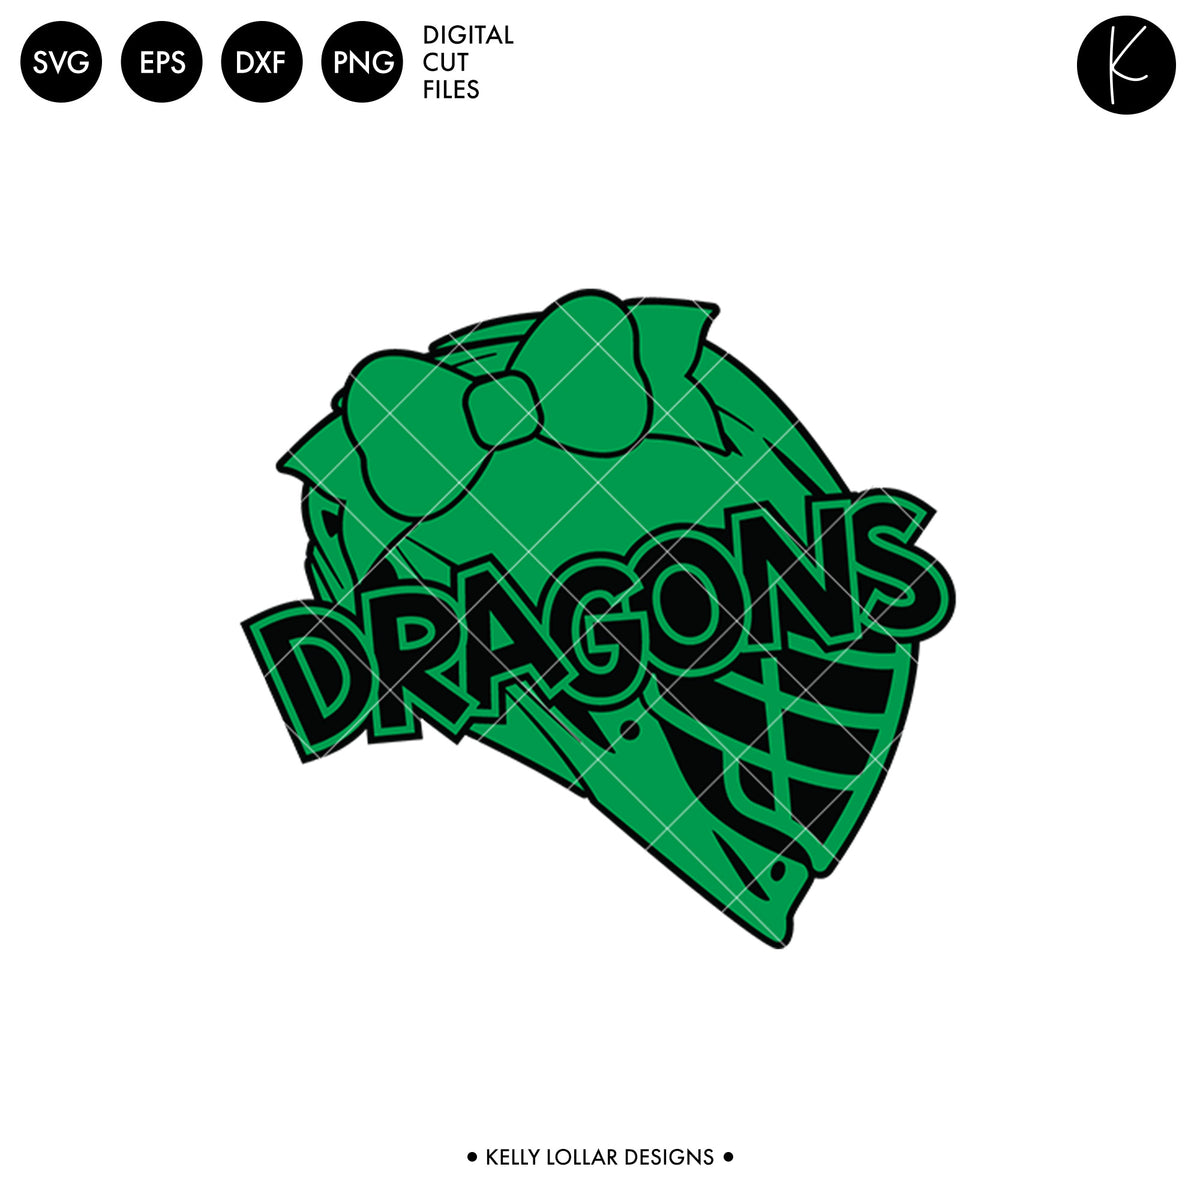 Dragons Lacrosse Bundle | SVG DXF EPS PNG Cut Files